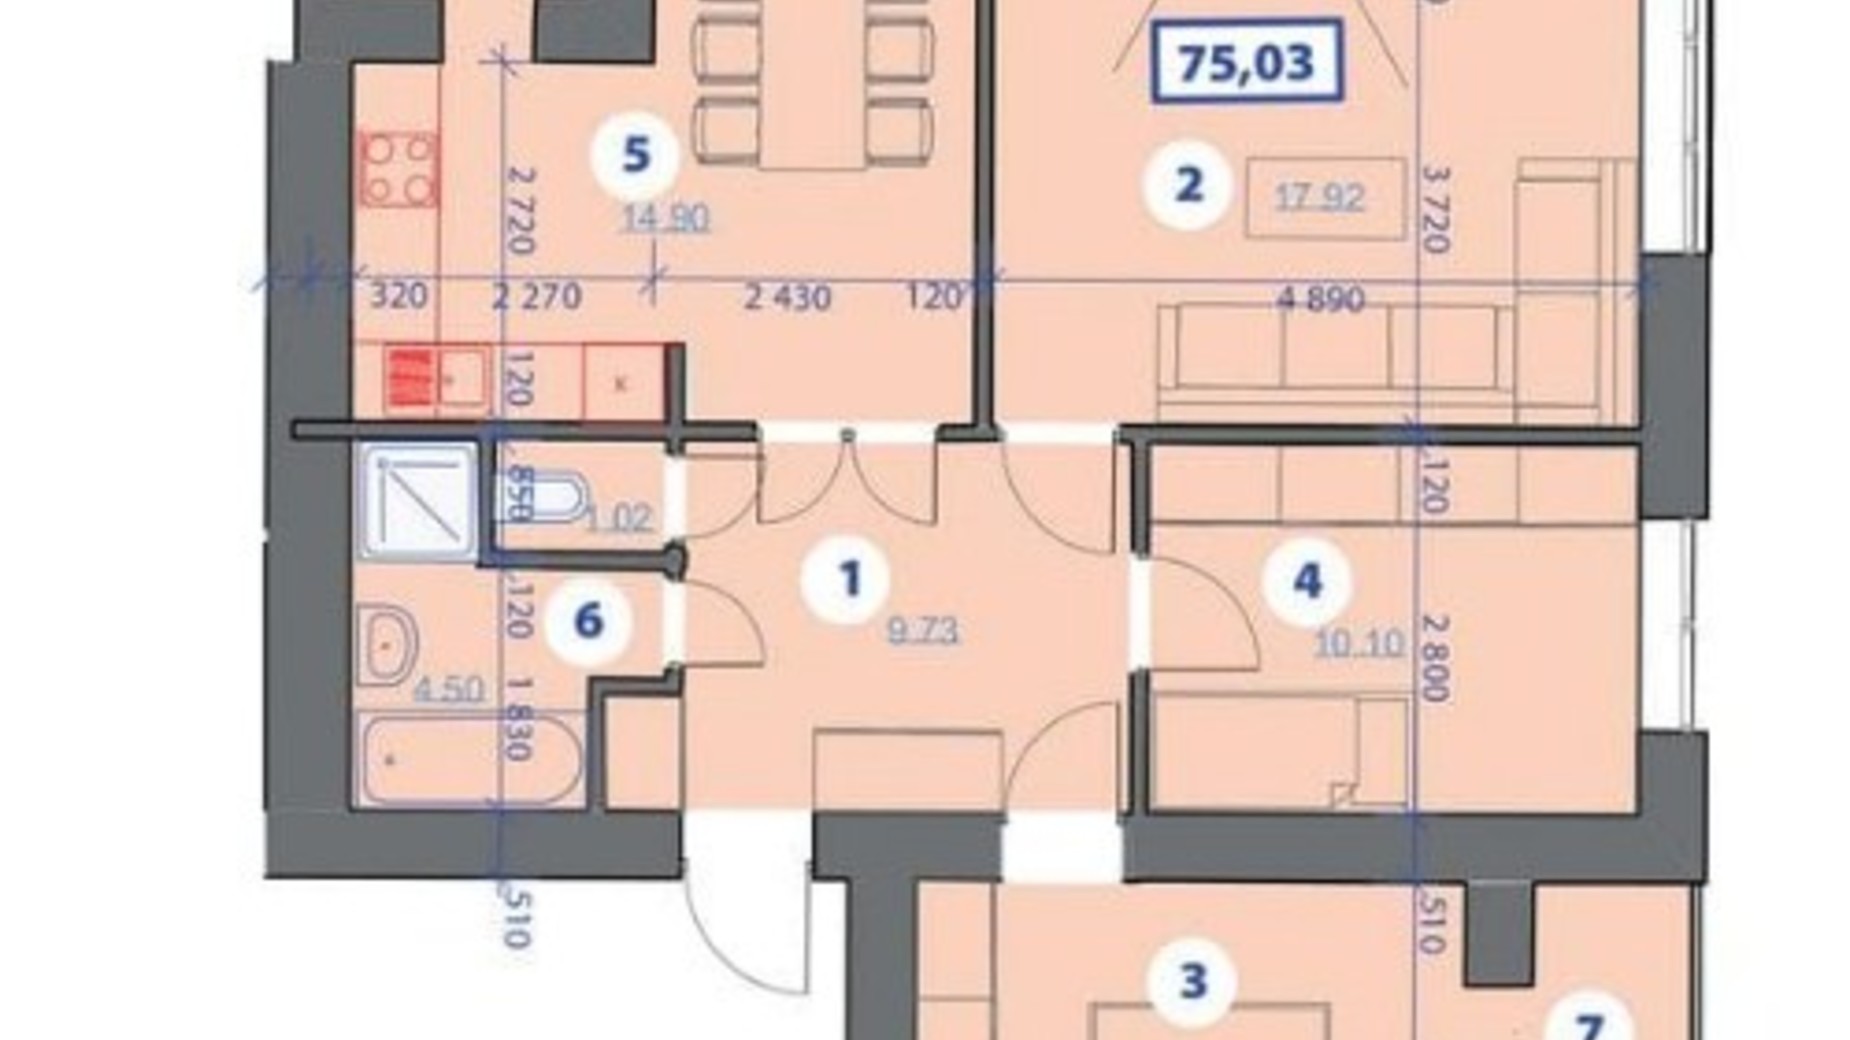 Планування 3-кімнатної квартири в ЖК Квартал Галицький 75.03 м², фото 243175